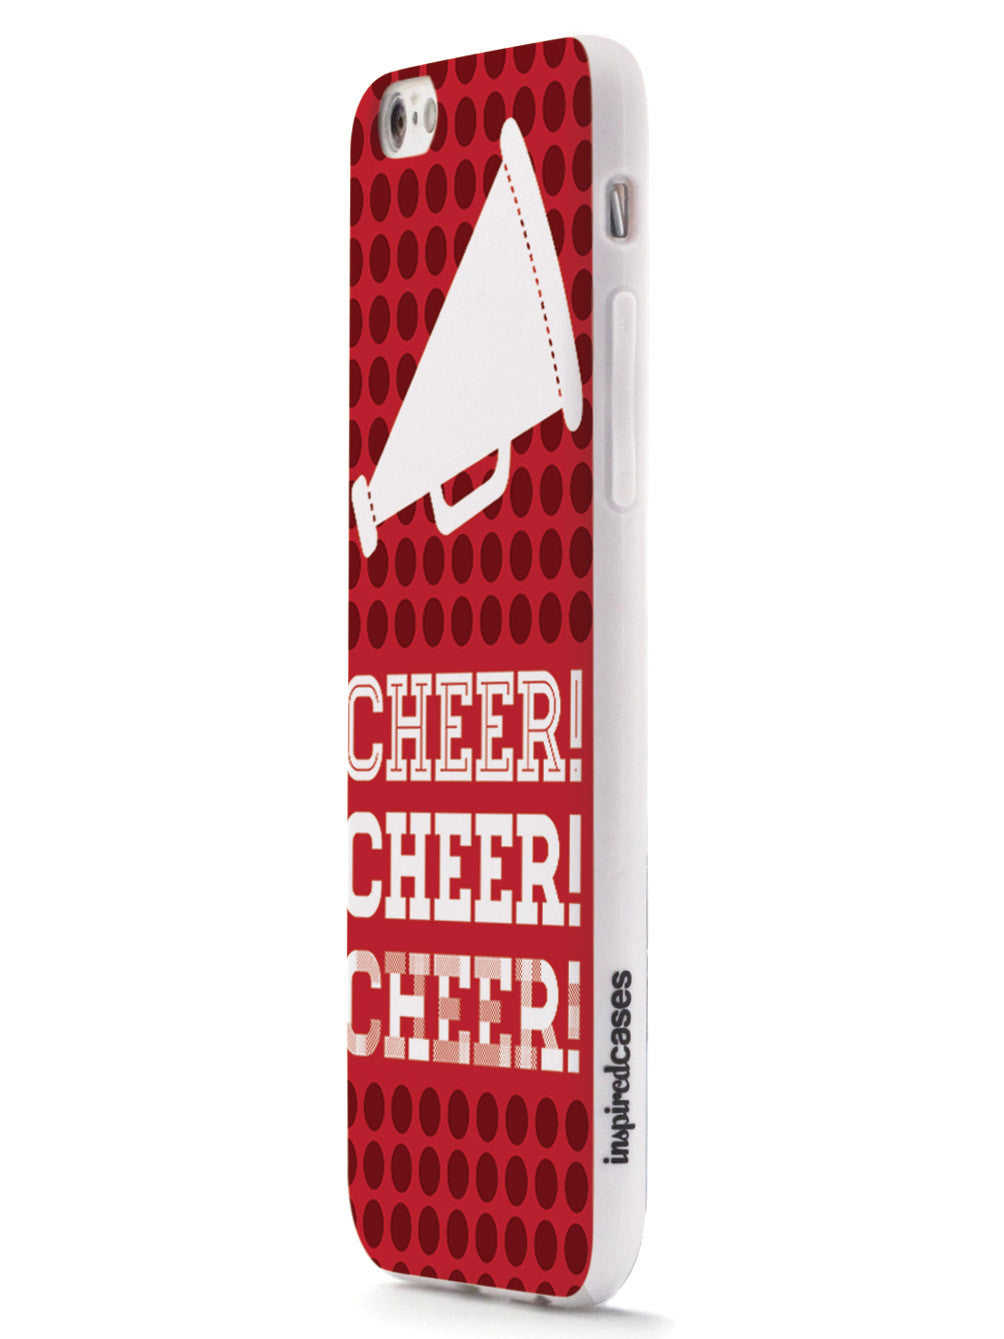 Cheer! Cheer! Cheer! Design Cheerleading Case